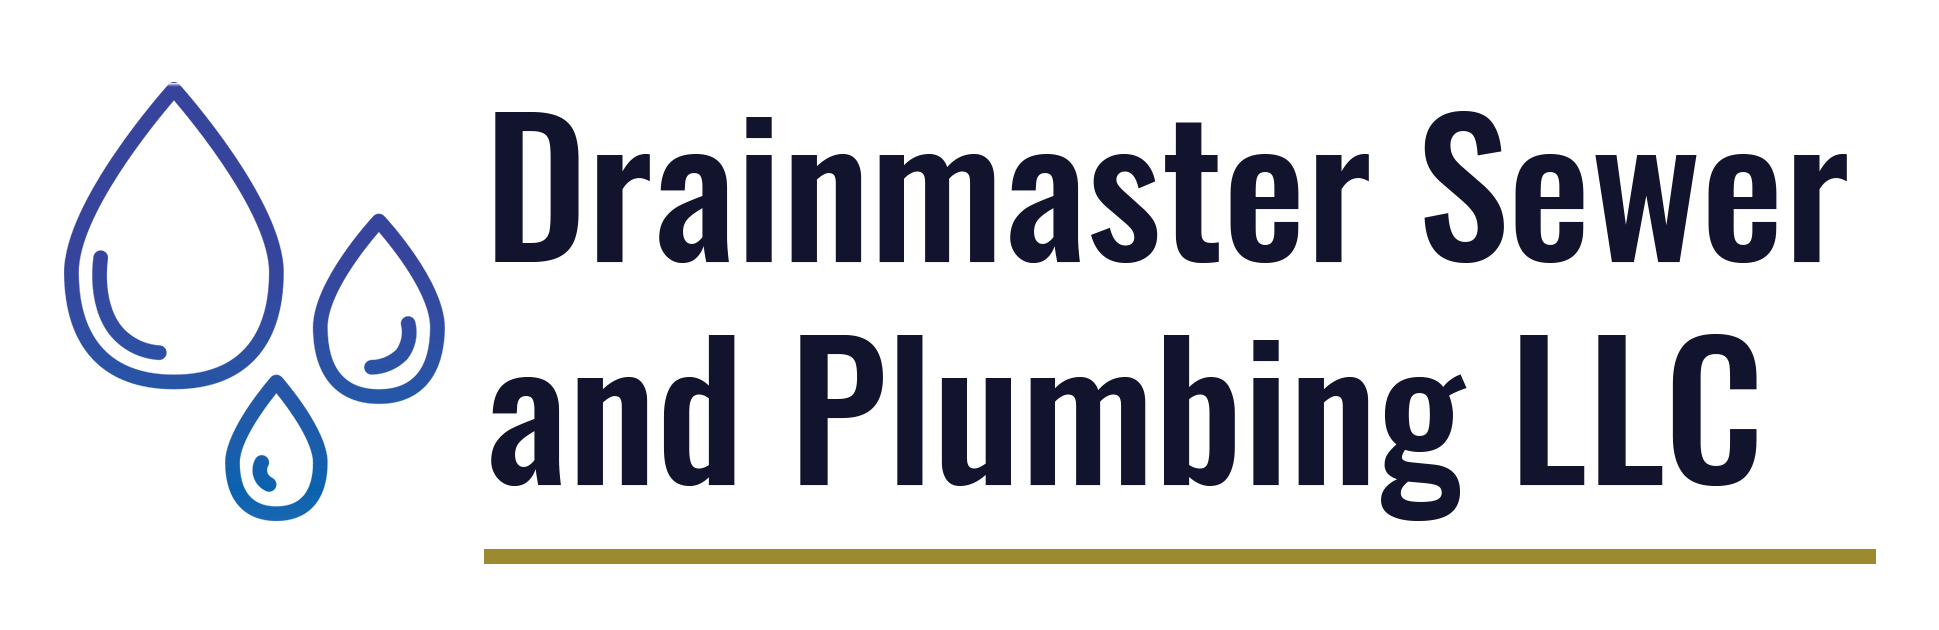 Drainmaster Sewer and Plumbing, LLC Logo